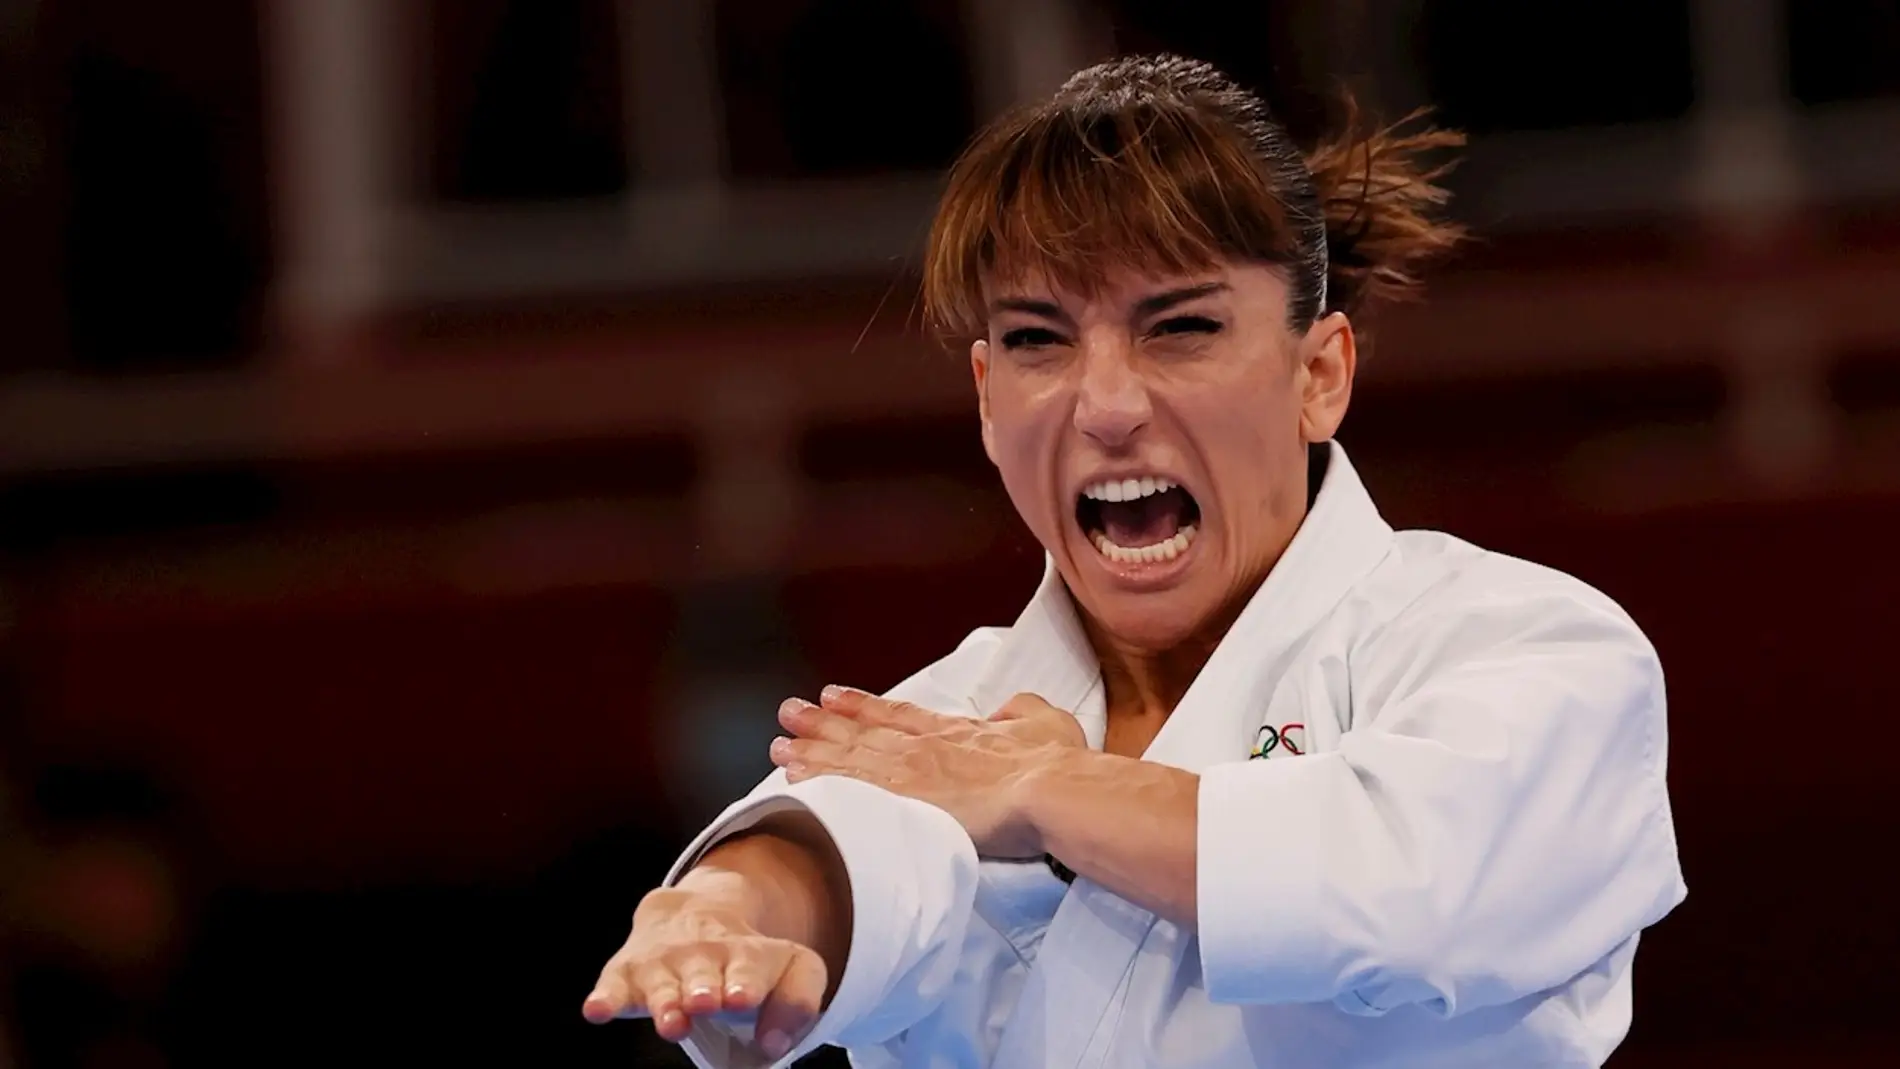 Sandra Sánchez de España compite durante la ronda eliminatoria de kata femenino en karate por los Juegos Olímpicos de Tokio 2020